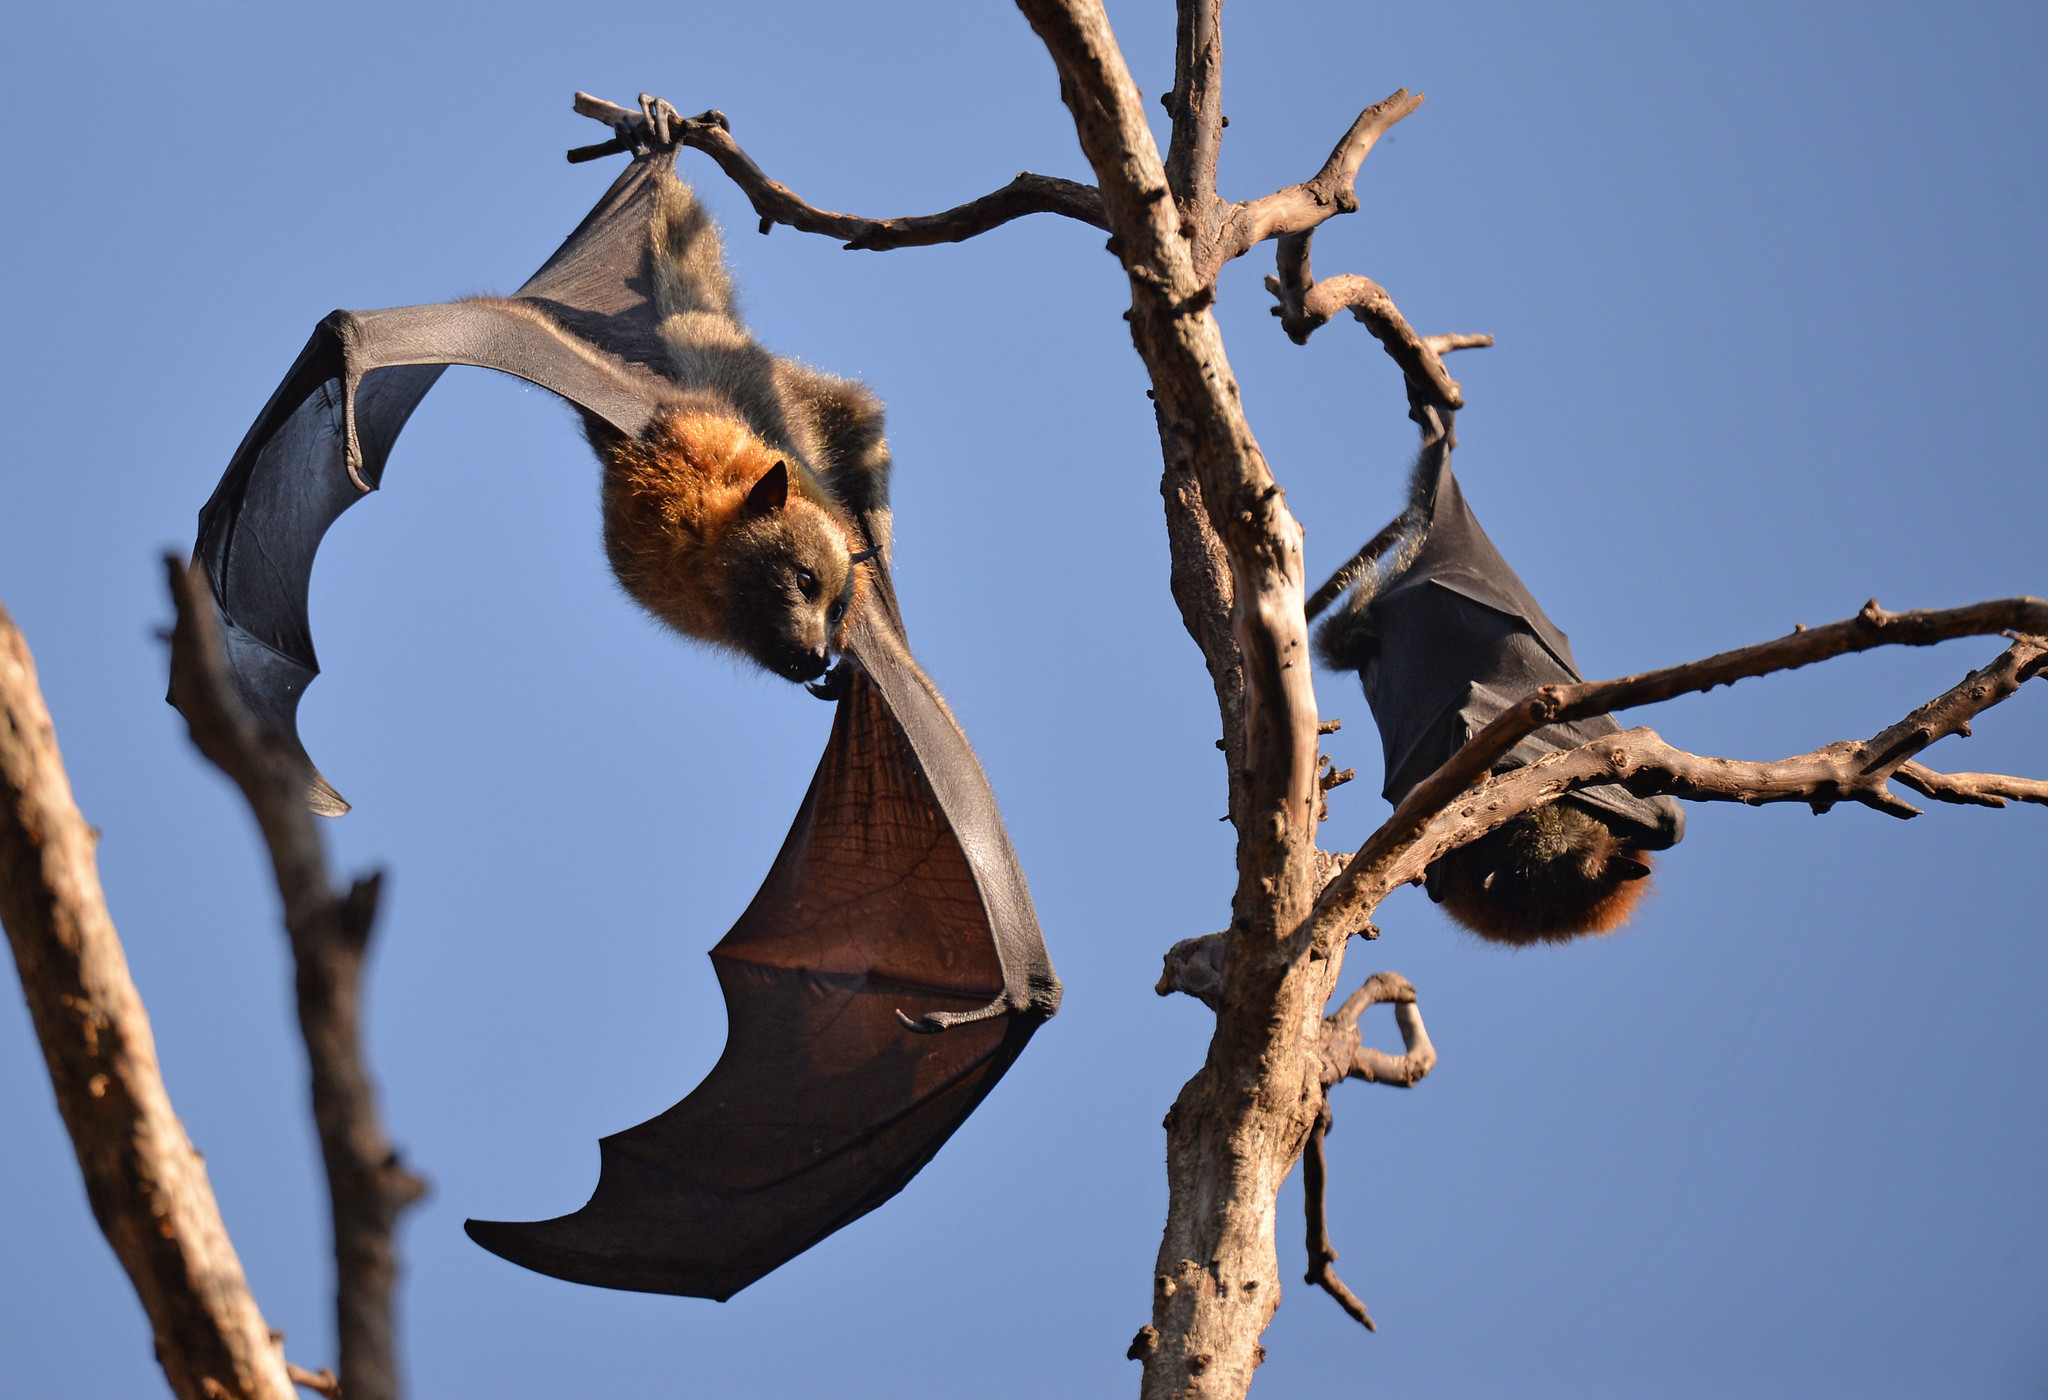 Meet 10 Coolest Bats